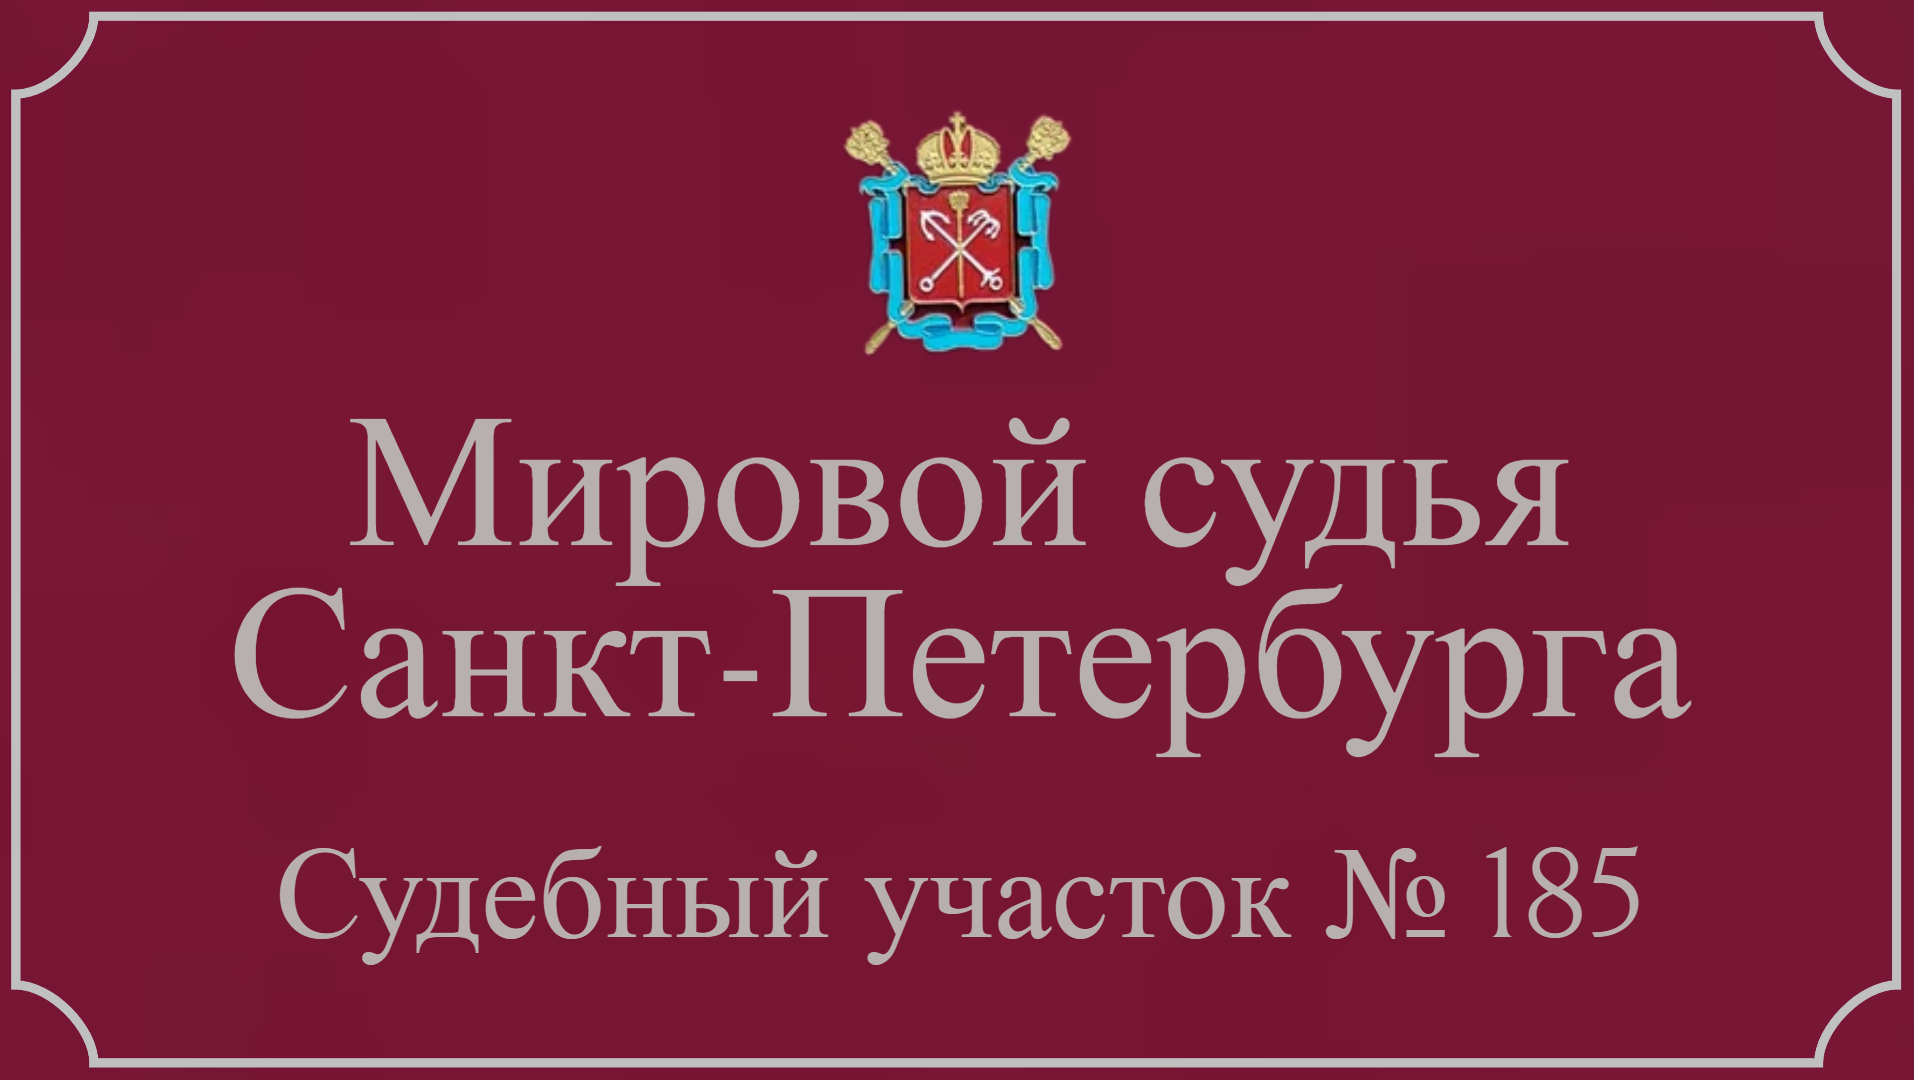 Информация по 185 судебному участку в Санкт-Петербурге.